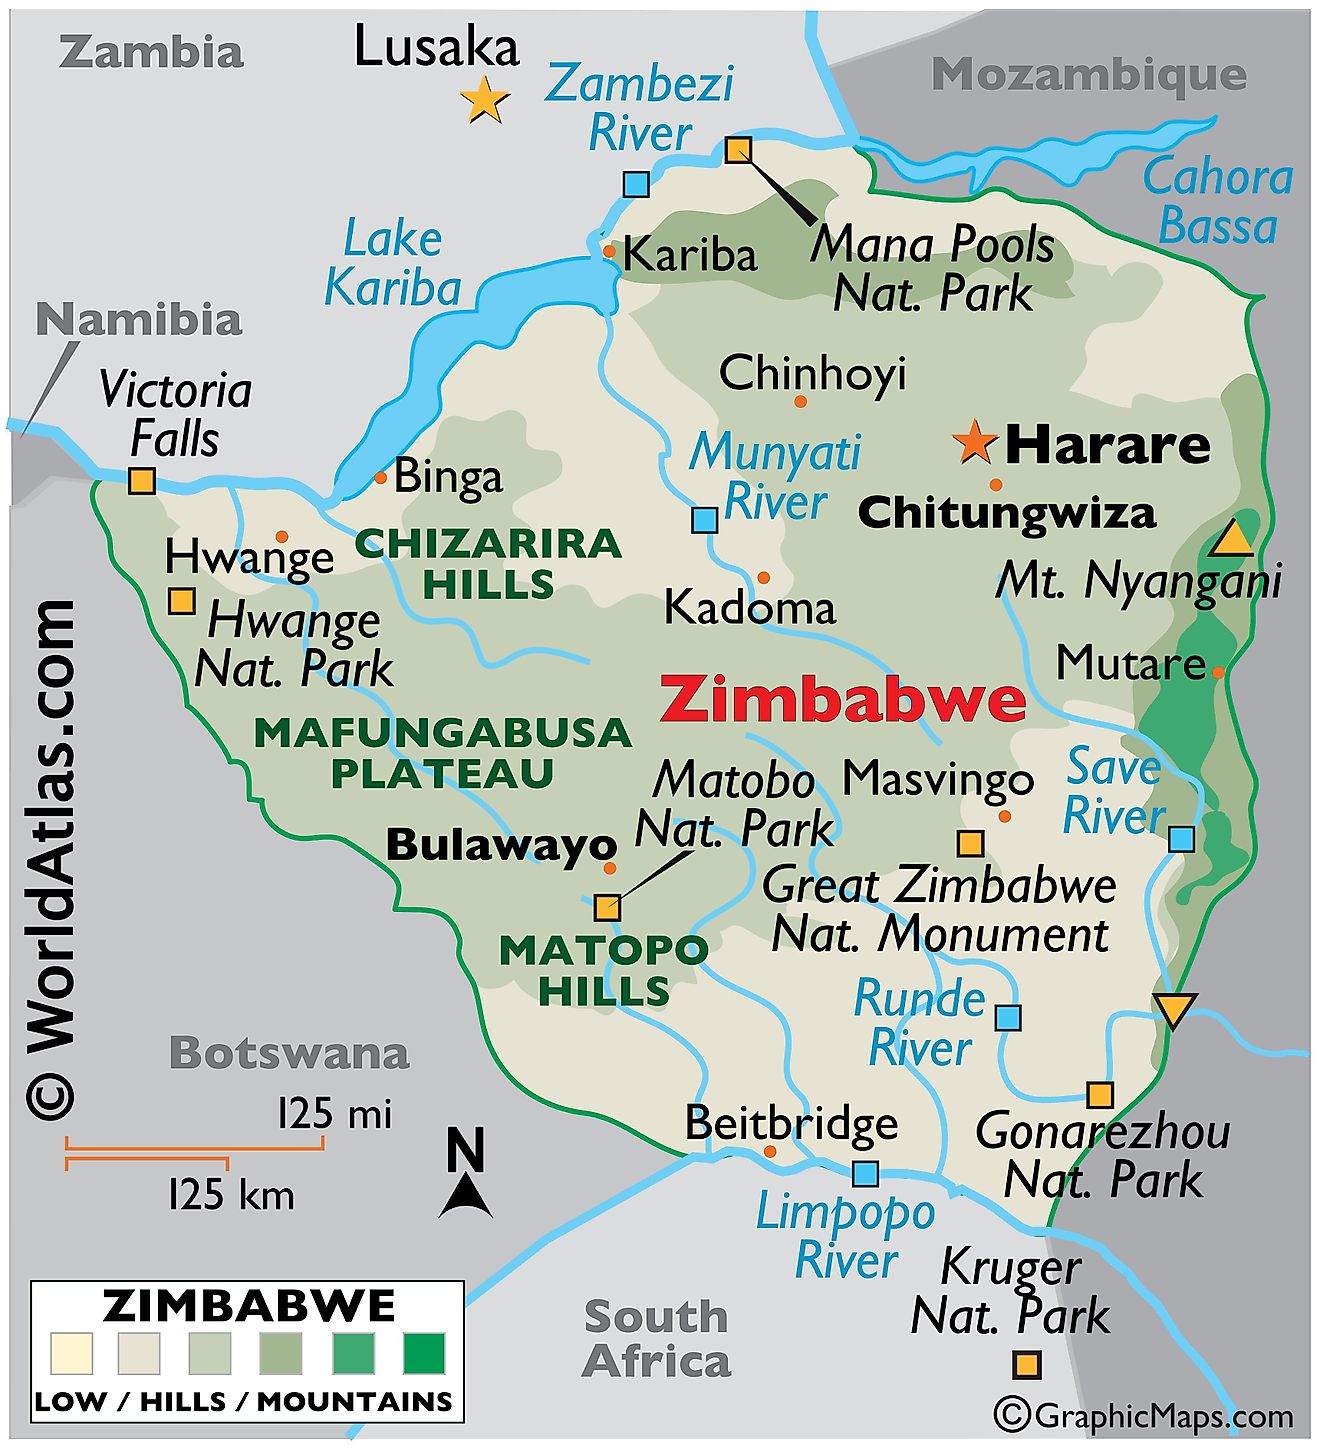 zimbabwe tourism number